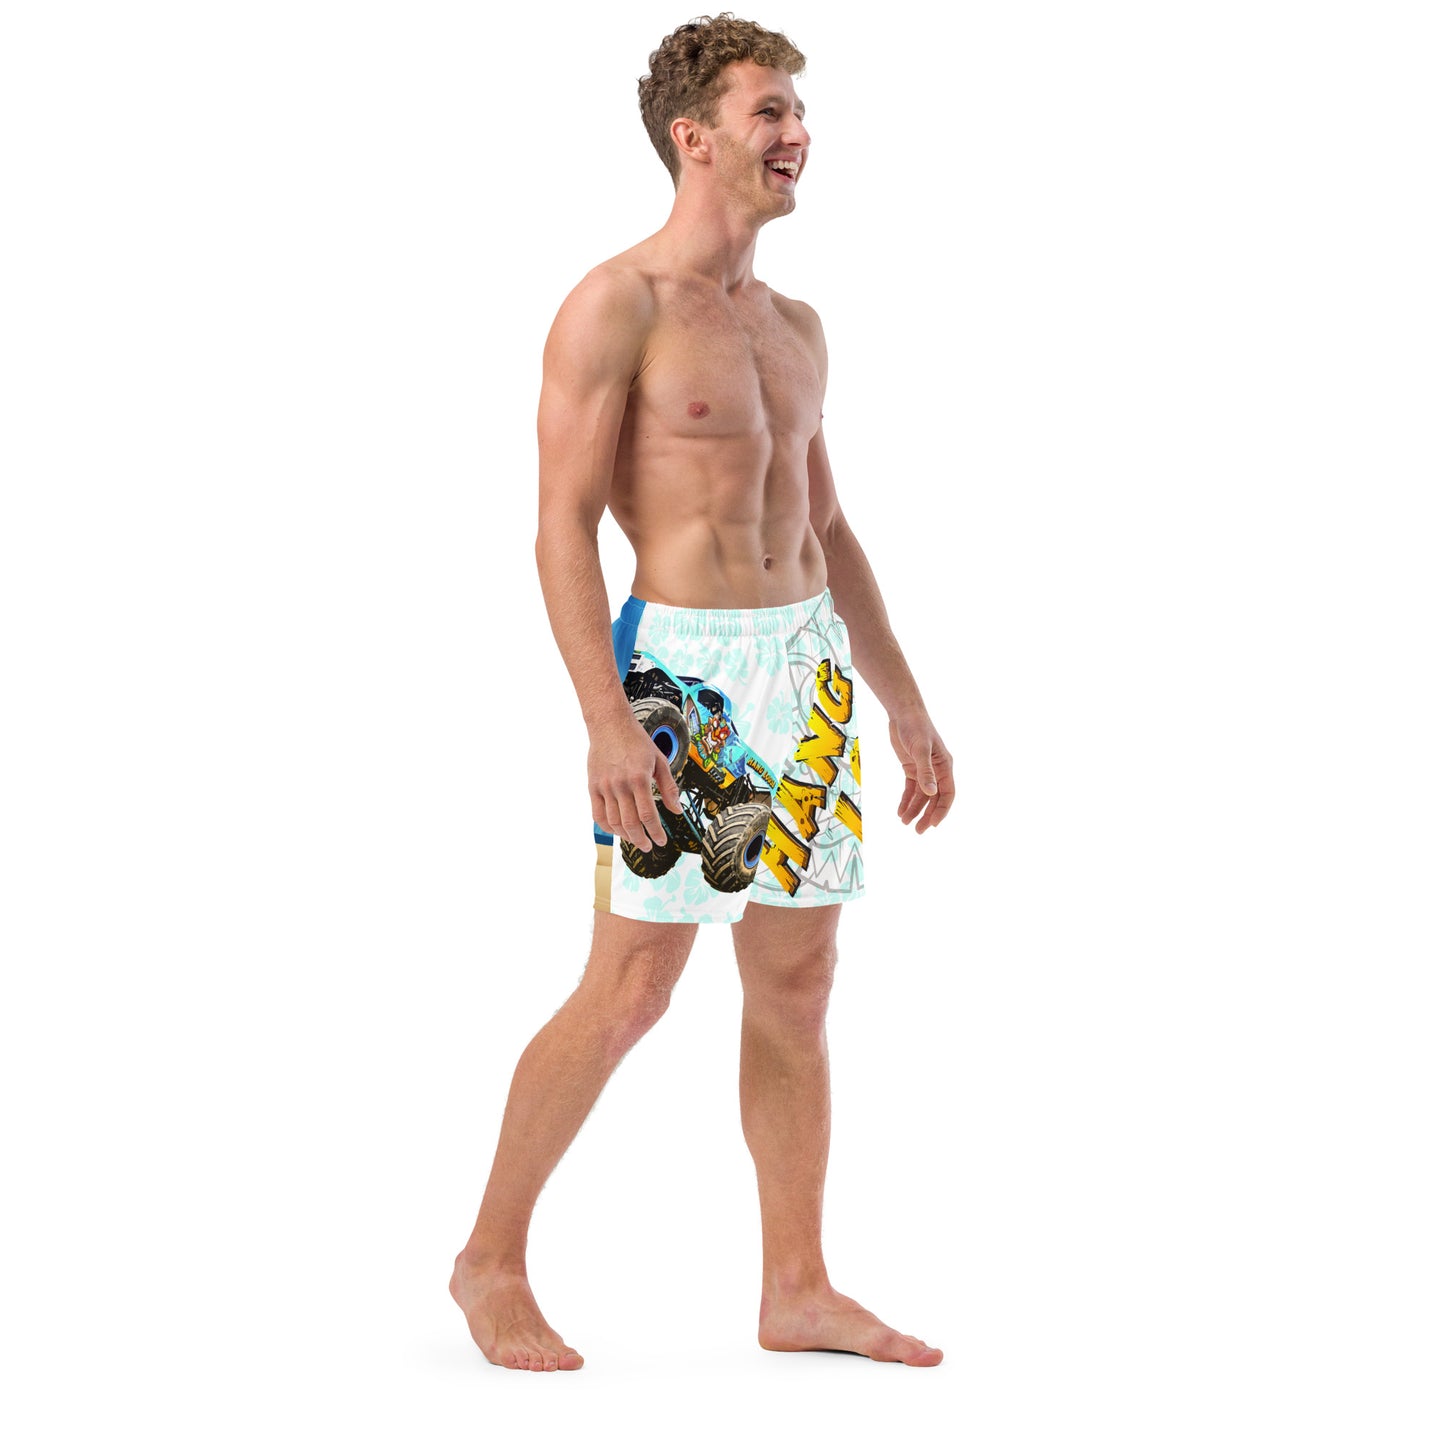 Hang Loose Men's swim trunks